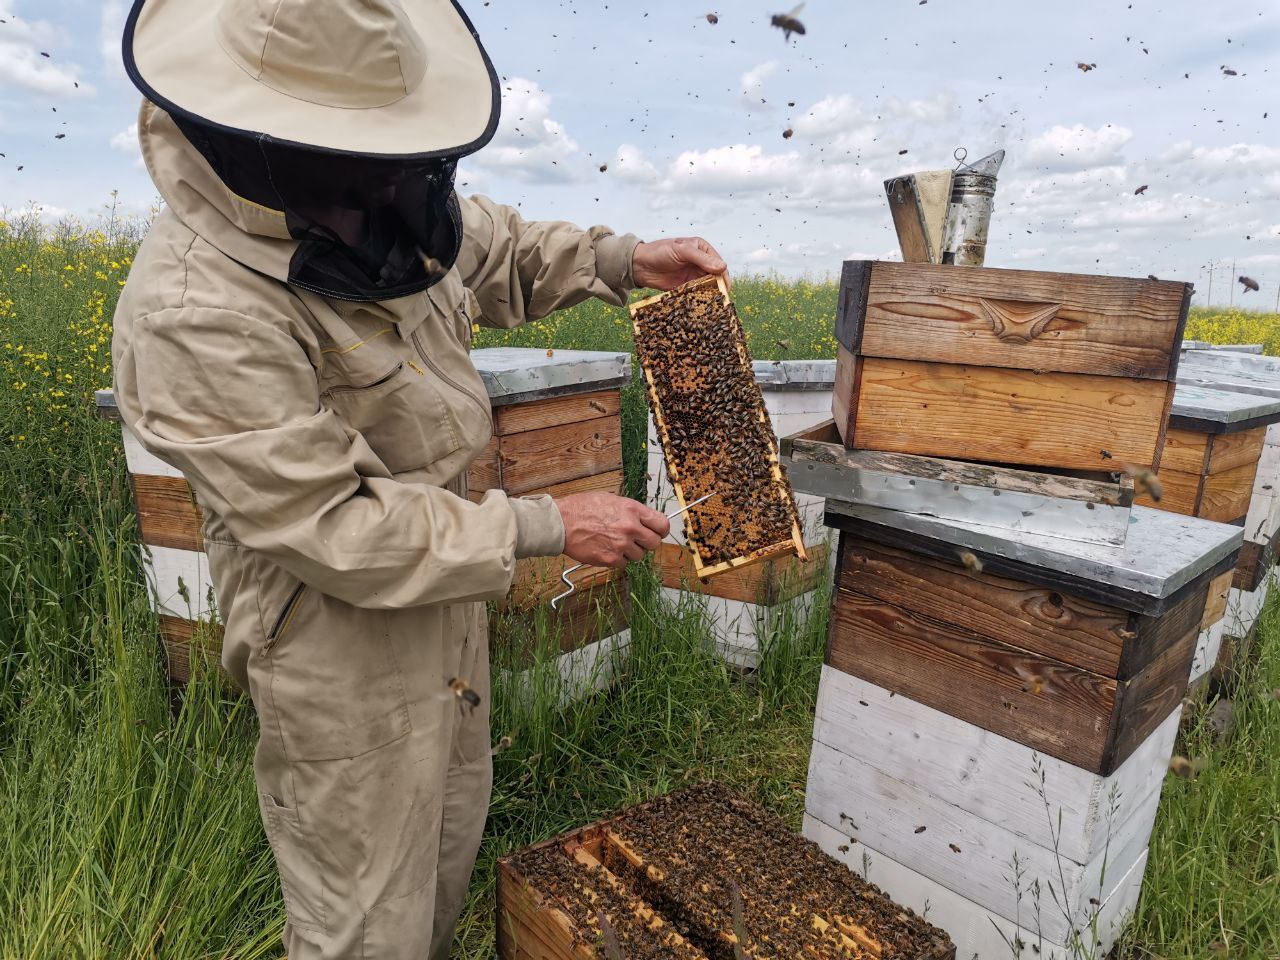 Продавал автозапчасти, теперь «повелевает» пчелами: репортаж с пасеки под Гродно